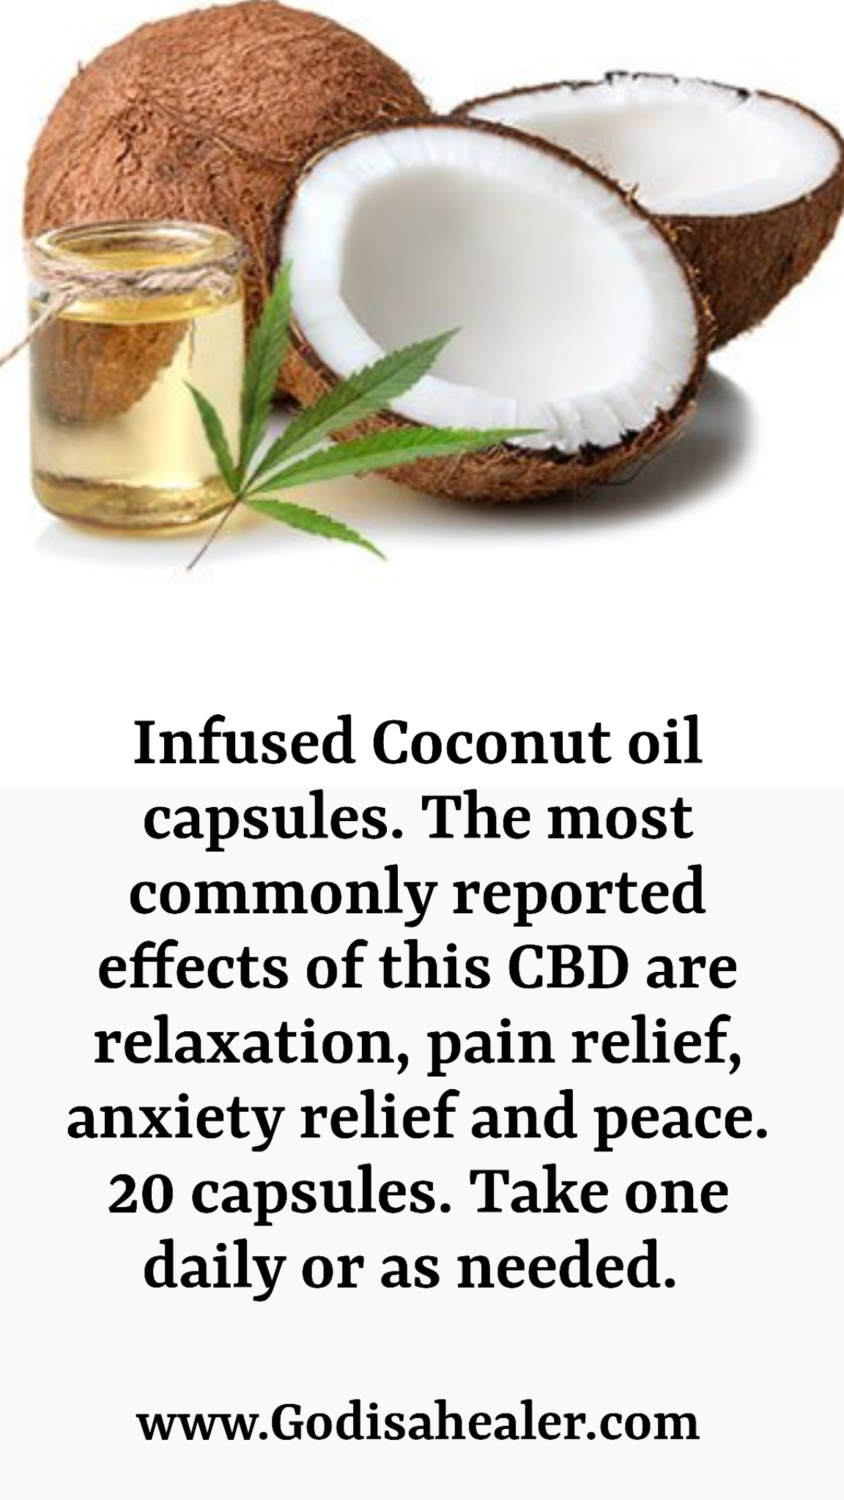 Infused Coconut oil capsules. 20 capsules